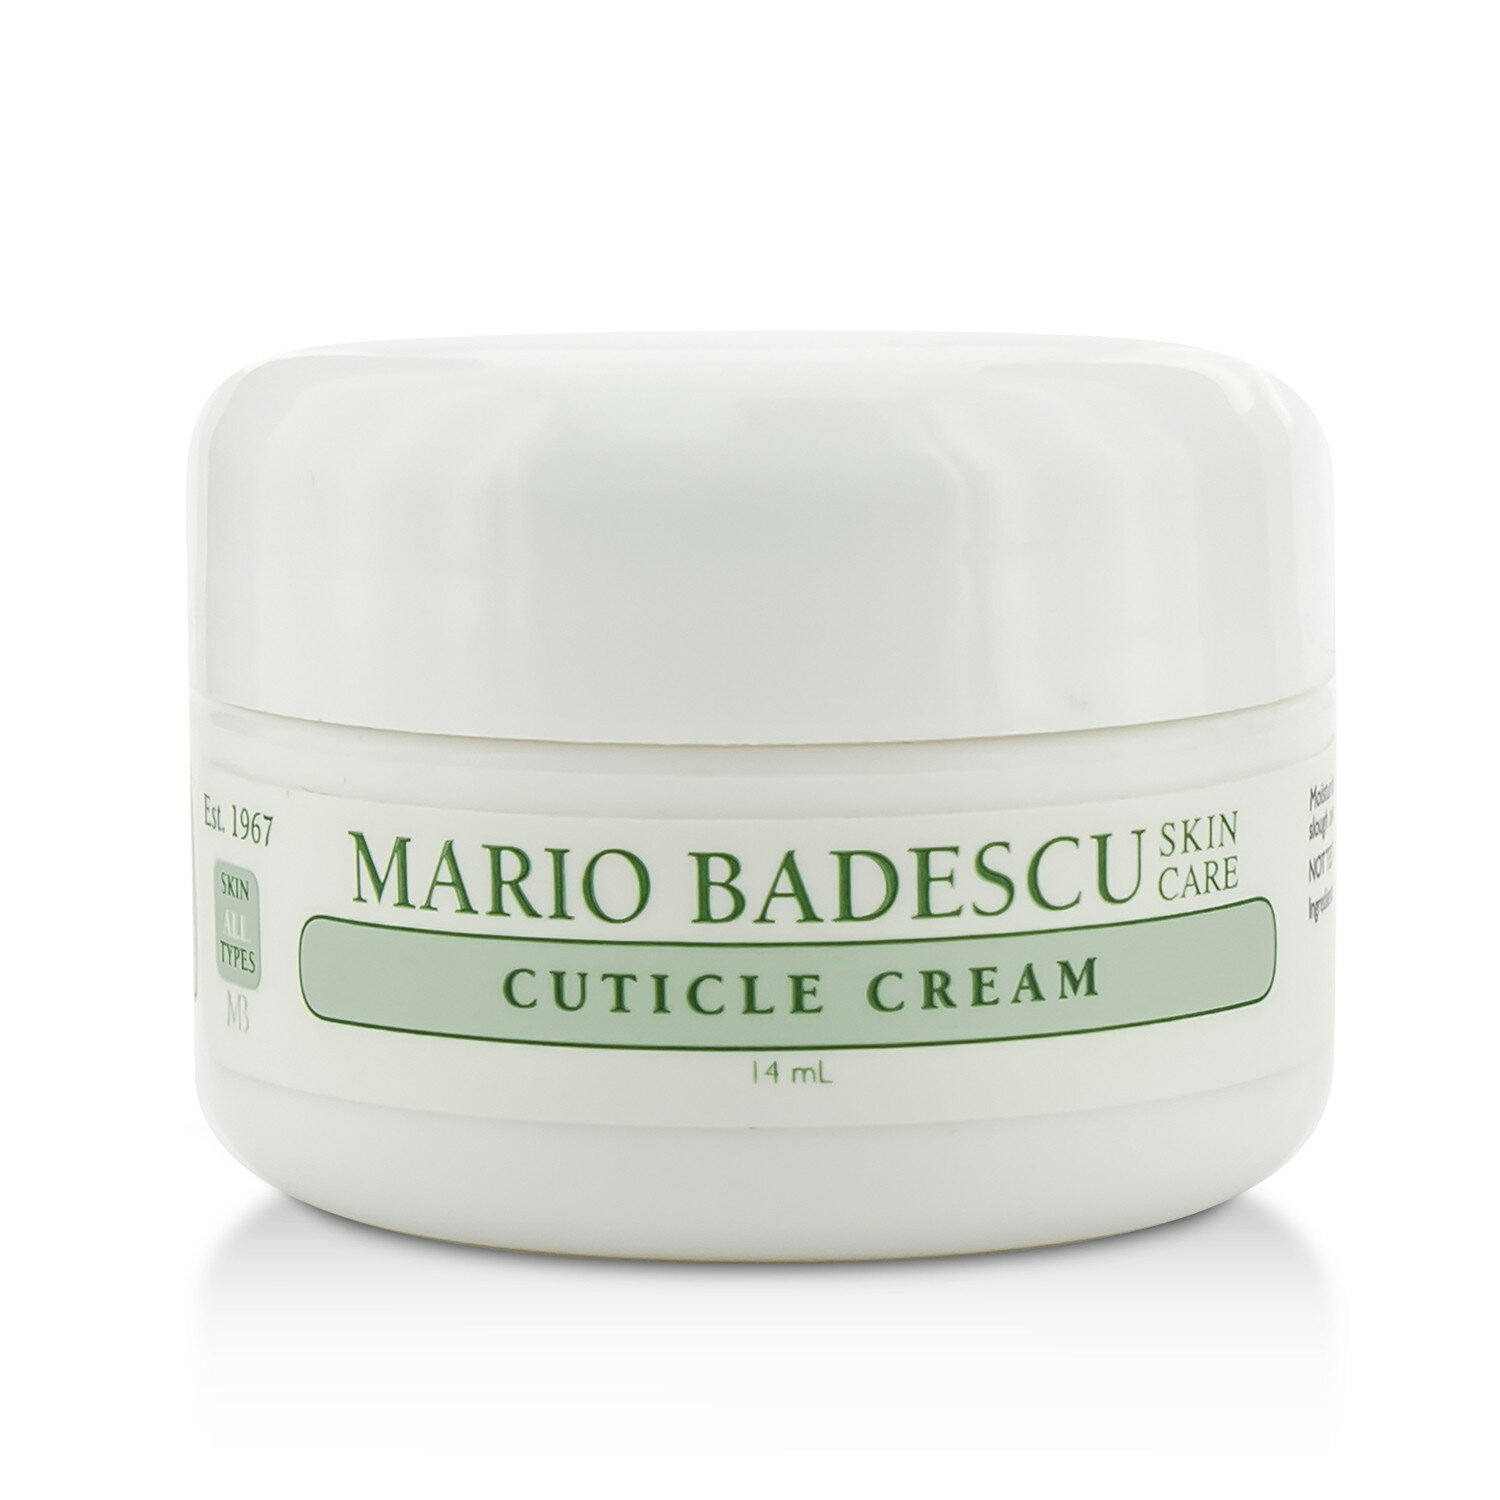 Mario Badescu - 指緣霜 Cuticle Cream - 所有膚質適用